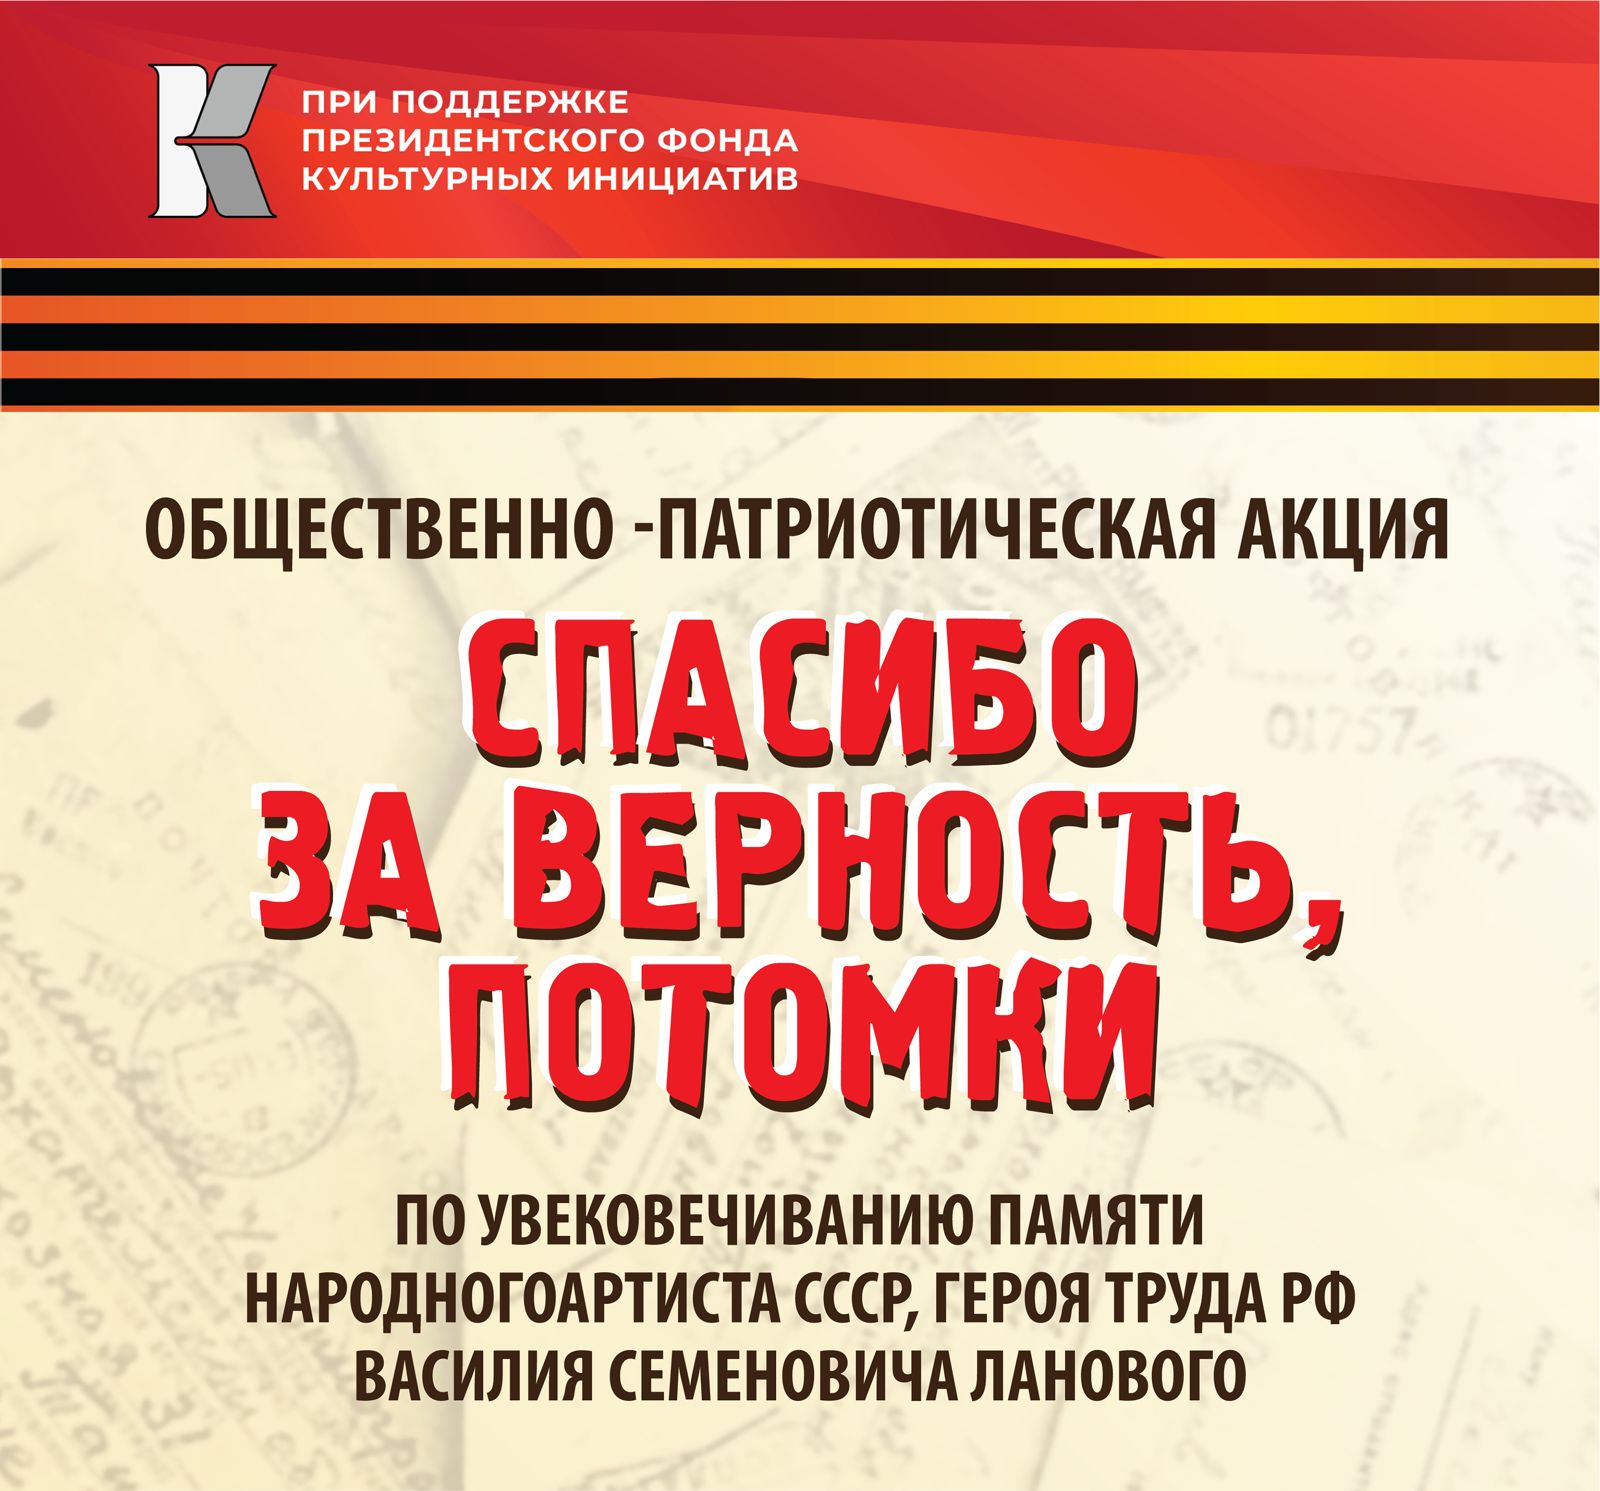 11 и 12 июня в городах-героях Севастополе и Керчи состоится торжественное открытие бюстов Василия Семёновича Ланового